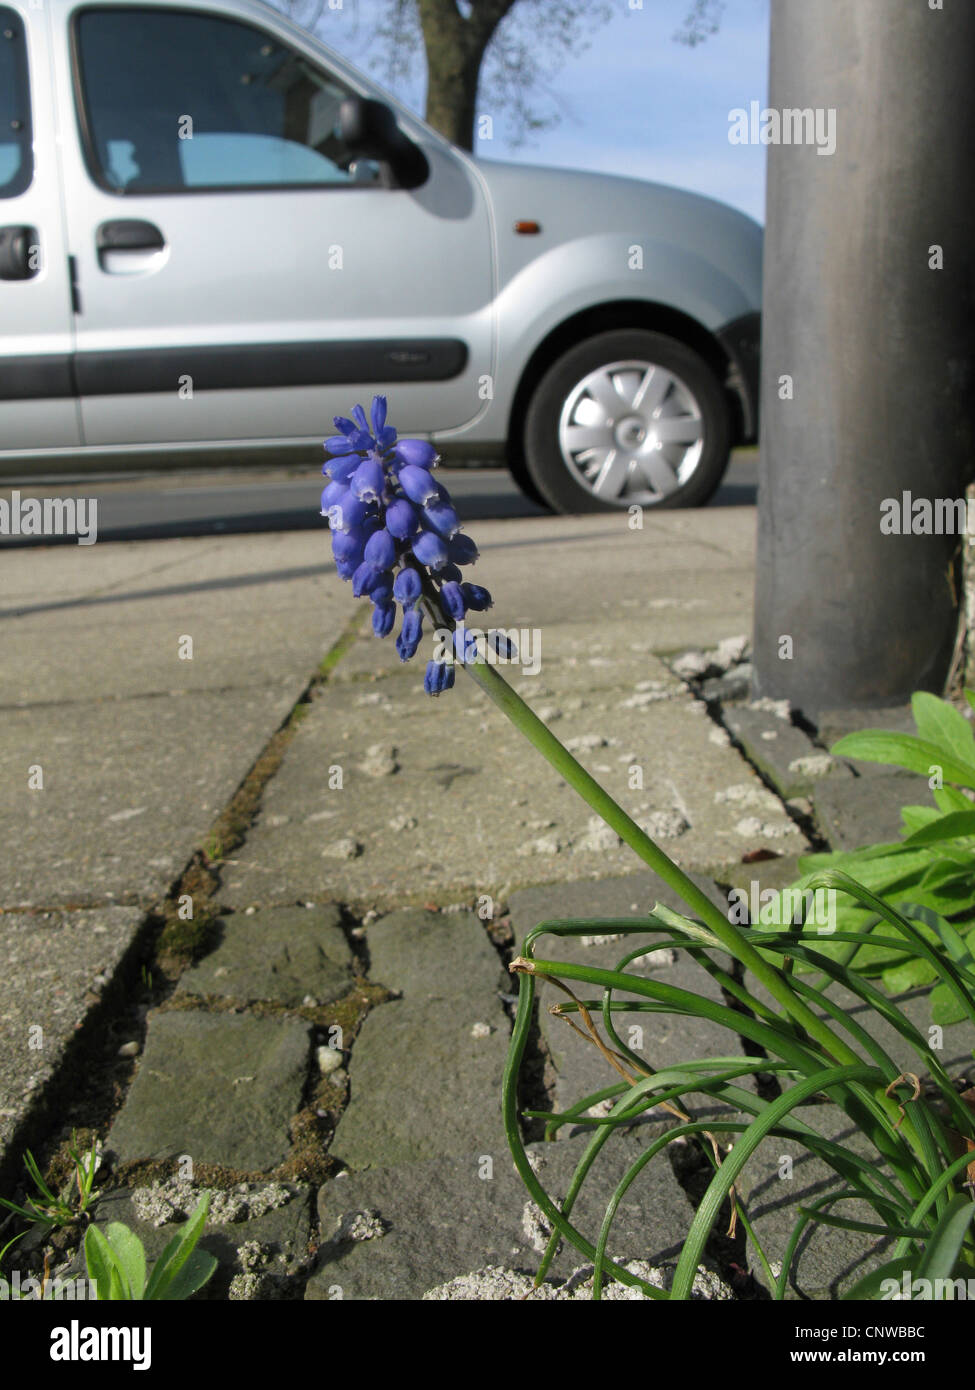 Blue Bottle, Starch Hyacinth, Grape Hyacinth (Muscari neglectum. Muscari racemosum), naturalized on a pavement, Germany, North Rhine-Westphalia Stock Photo